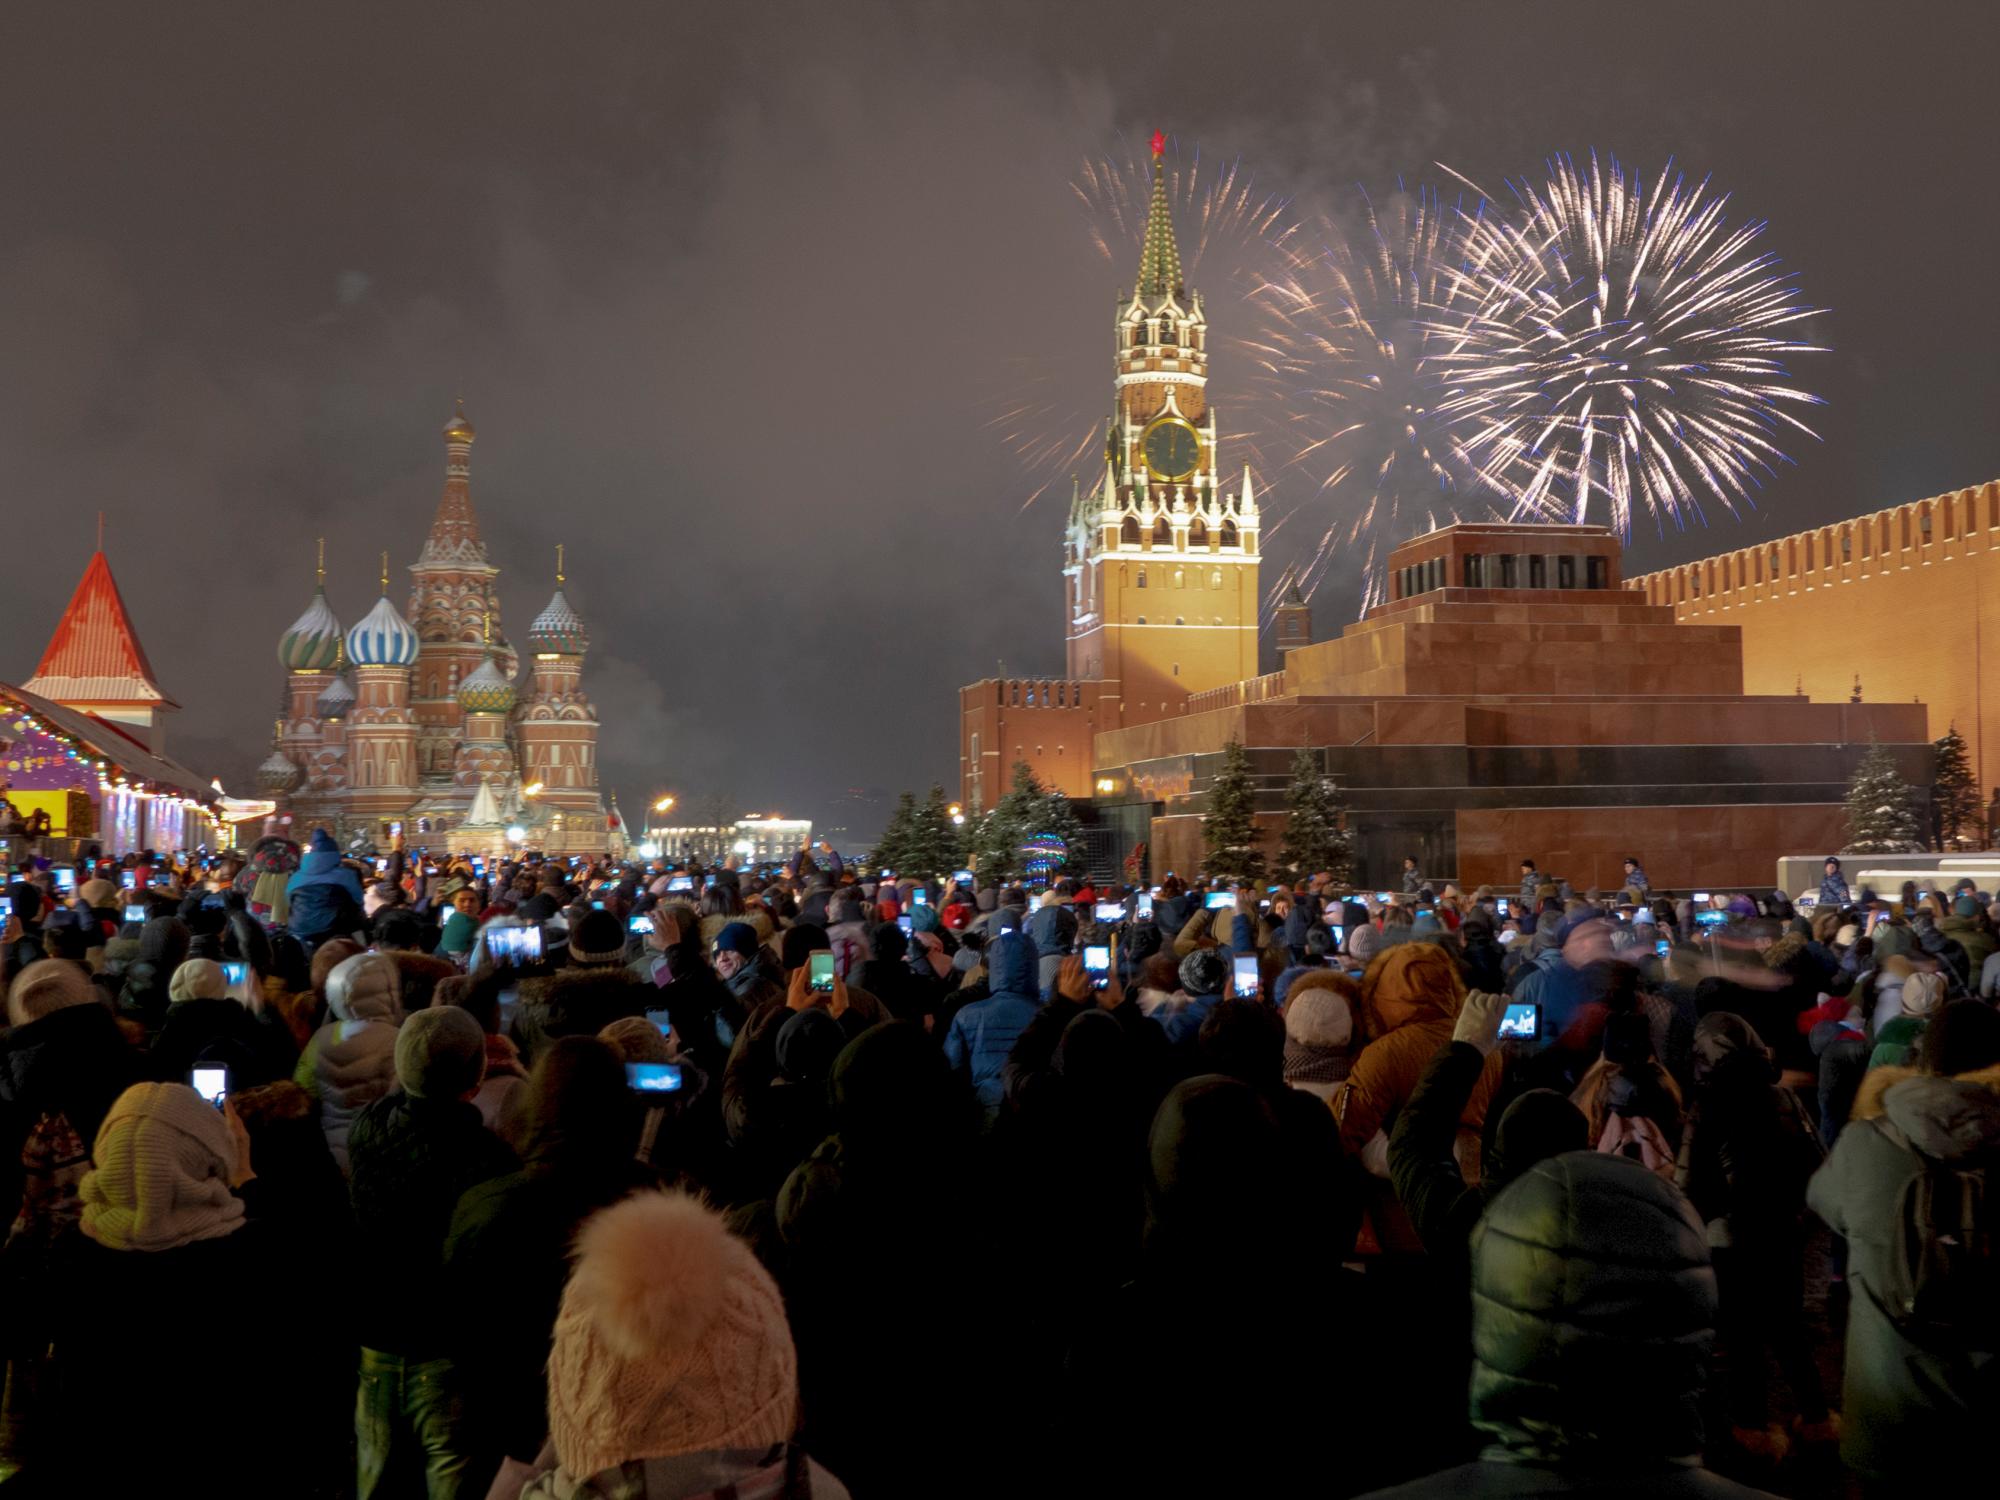 Los fuegos artificiales explotan sobre el Kremlin durante las celebraciones de Año Nuevo en la Plaza Roja con la Catedral de San Basilio, a la izquierda, y la Torre Spasskaya, a la derecha, en el fondo en Moscú, Rusia, el martes 1 de enero de 2019.